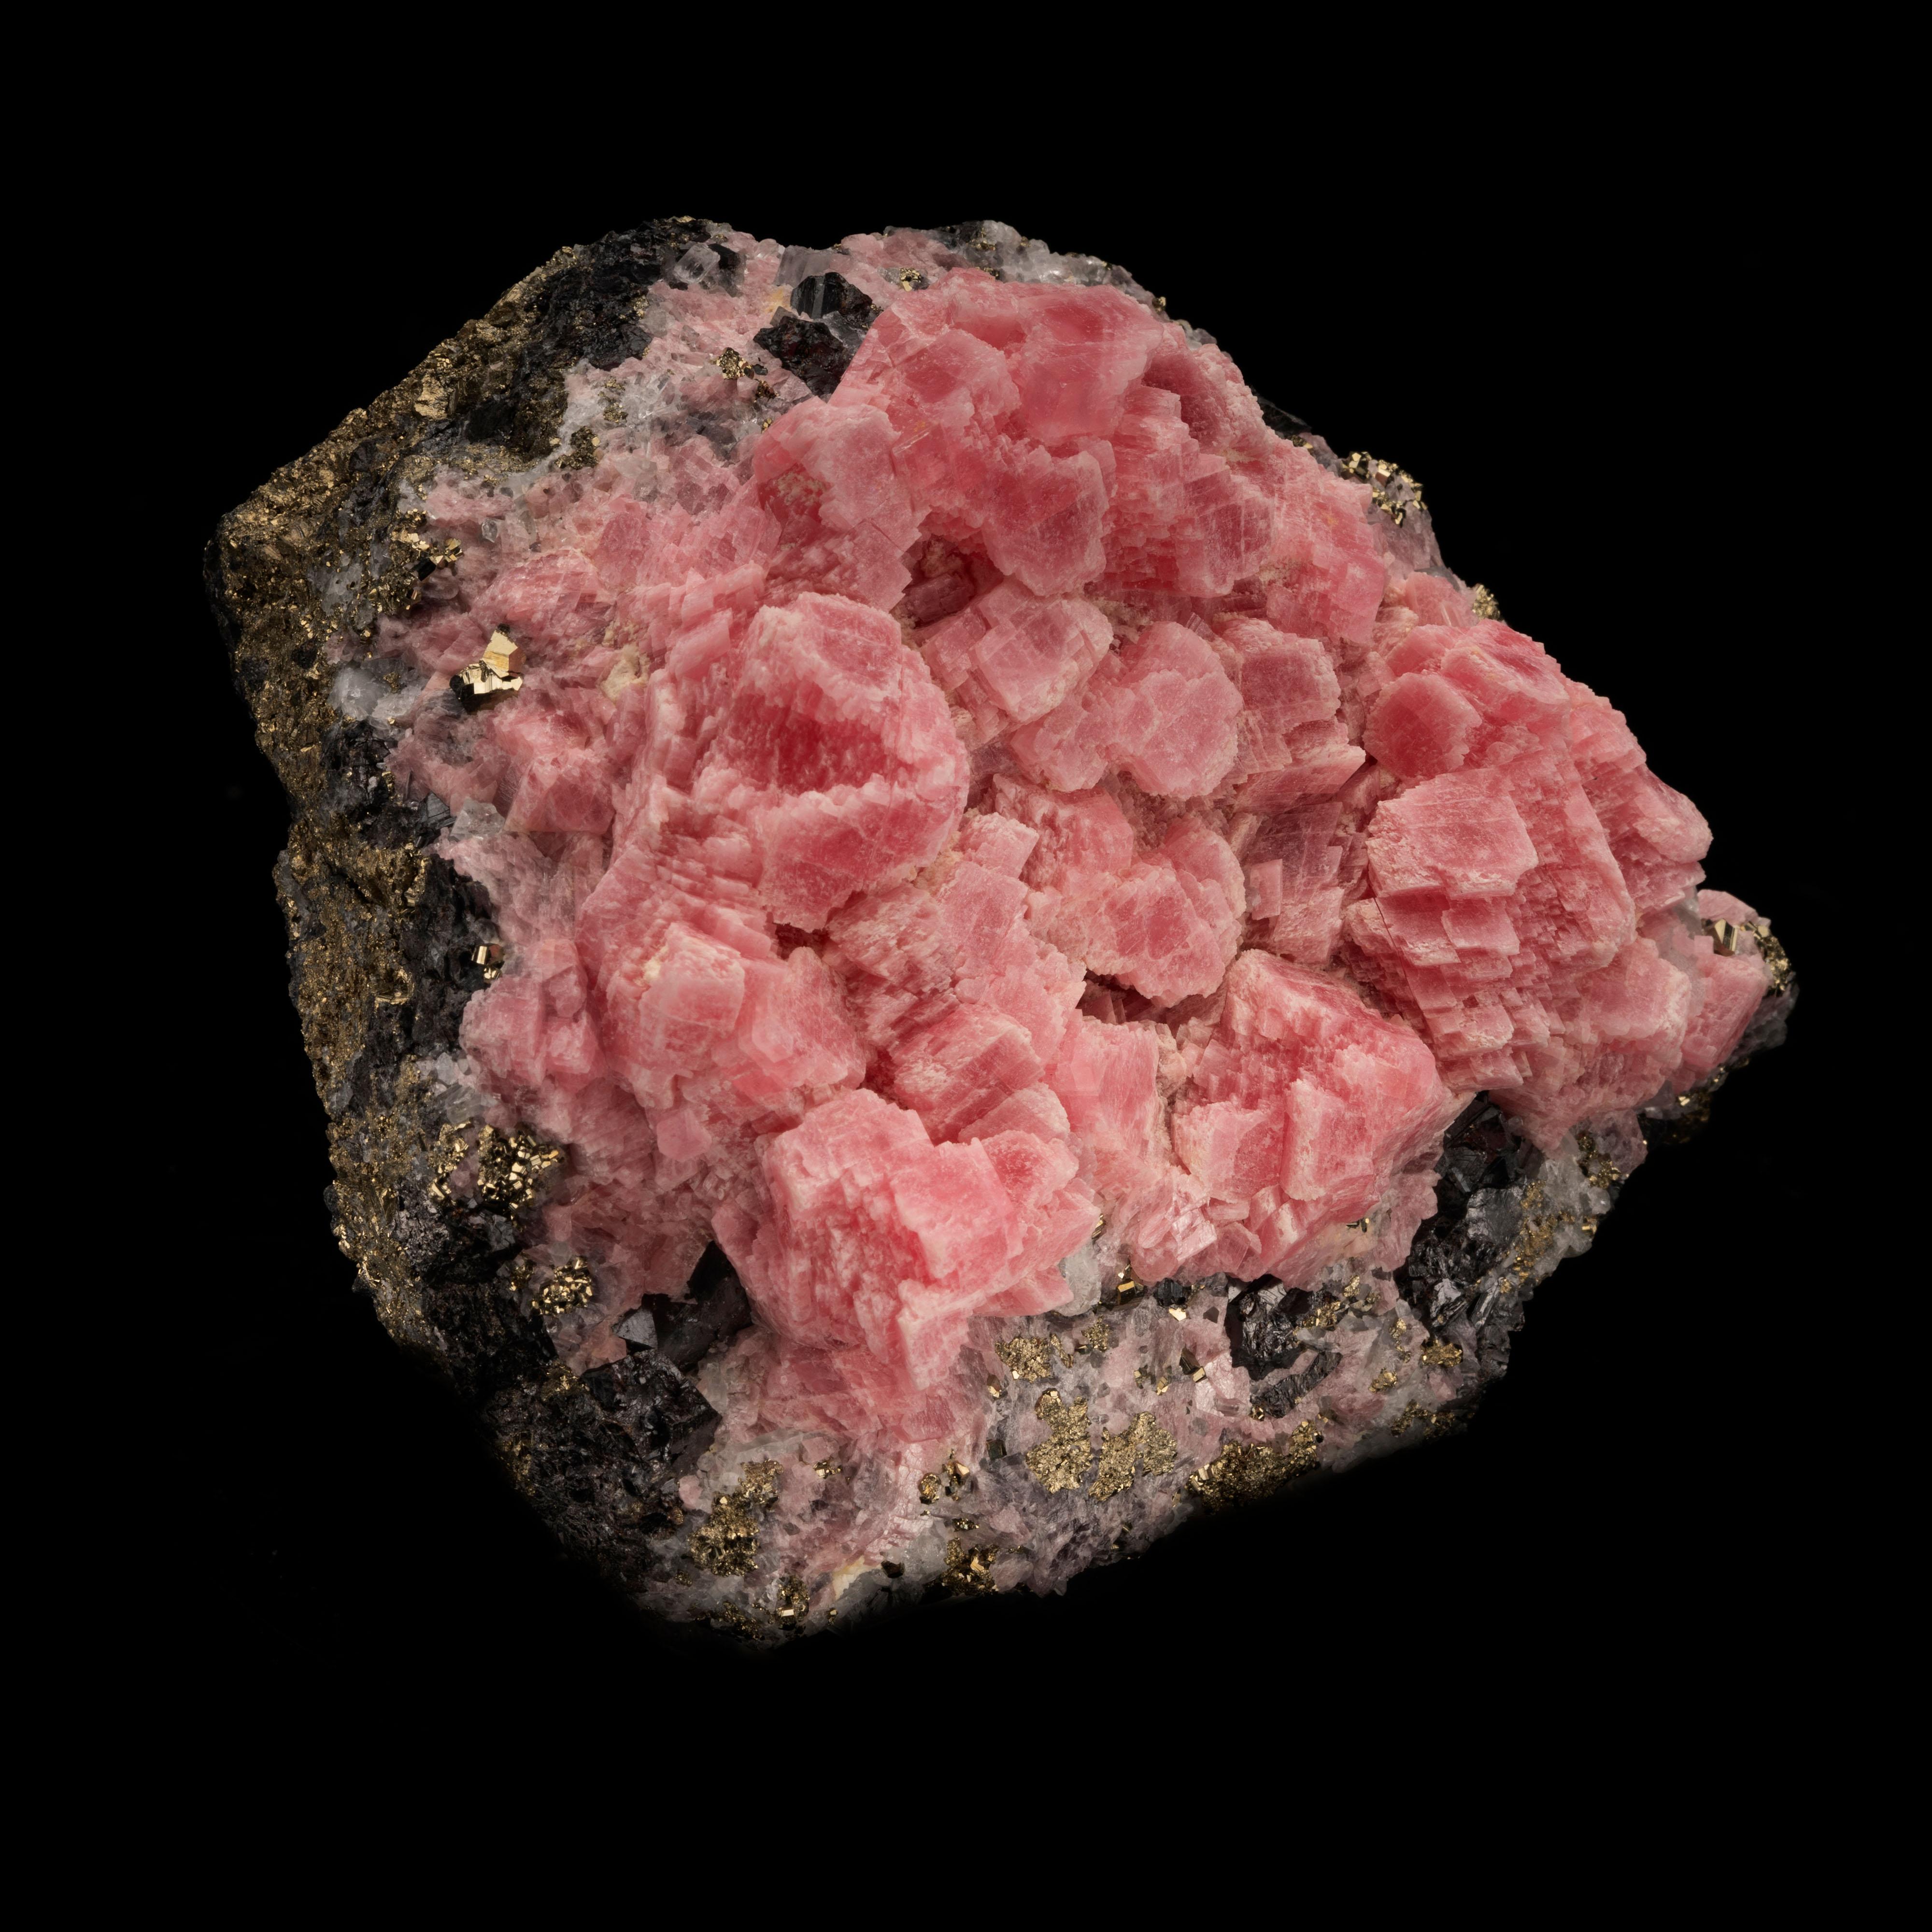 Ce superbe spécimen combiné du Pérou présente de luxuriants cristaux de rhodochrosite rhomboédrique rose densément regroupés sur une matrice unique et étincelante de tétrahedrite lustrée, d'encre et d'une généreuse couche de cristaux de pyrite